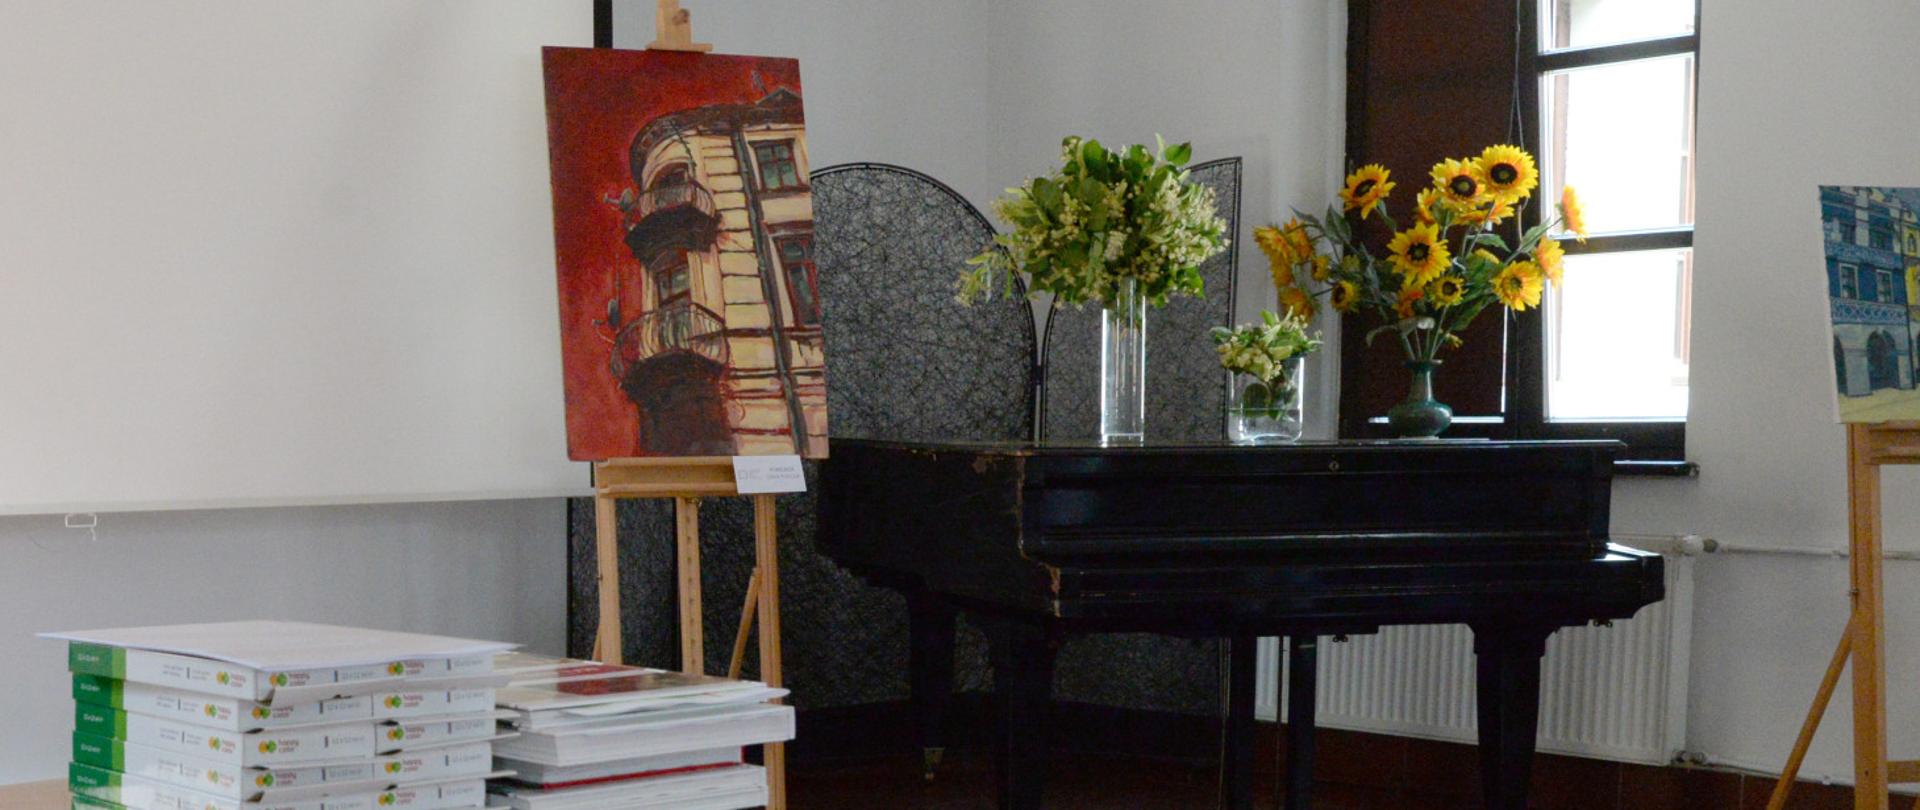 po lewej książki na stoliku, centralnie fortepian a na nim wazony z kwiatami, obok sztaluga z obrazem